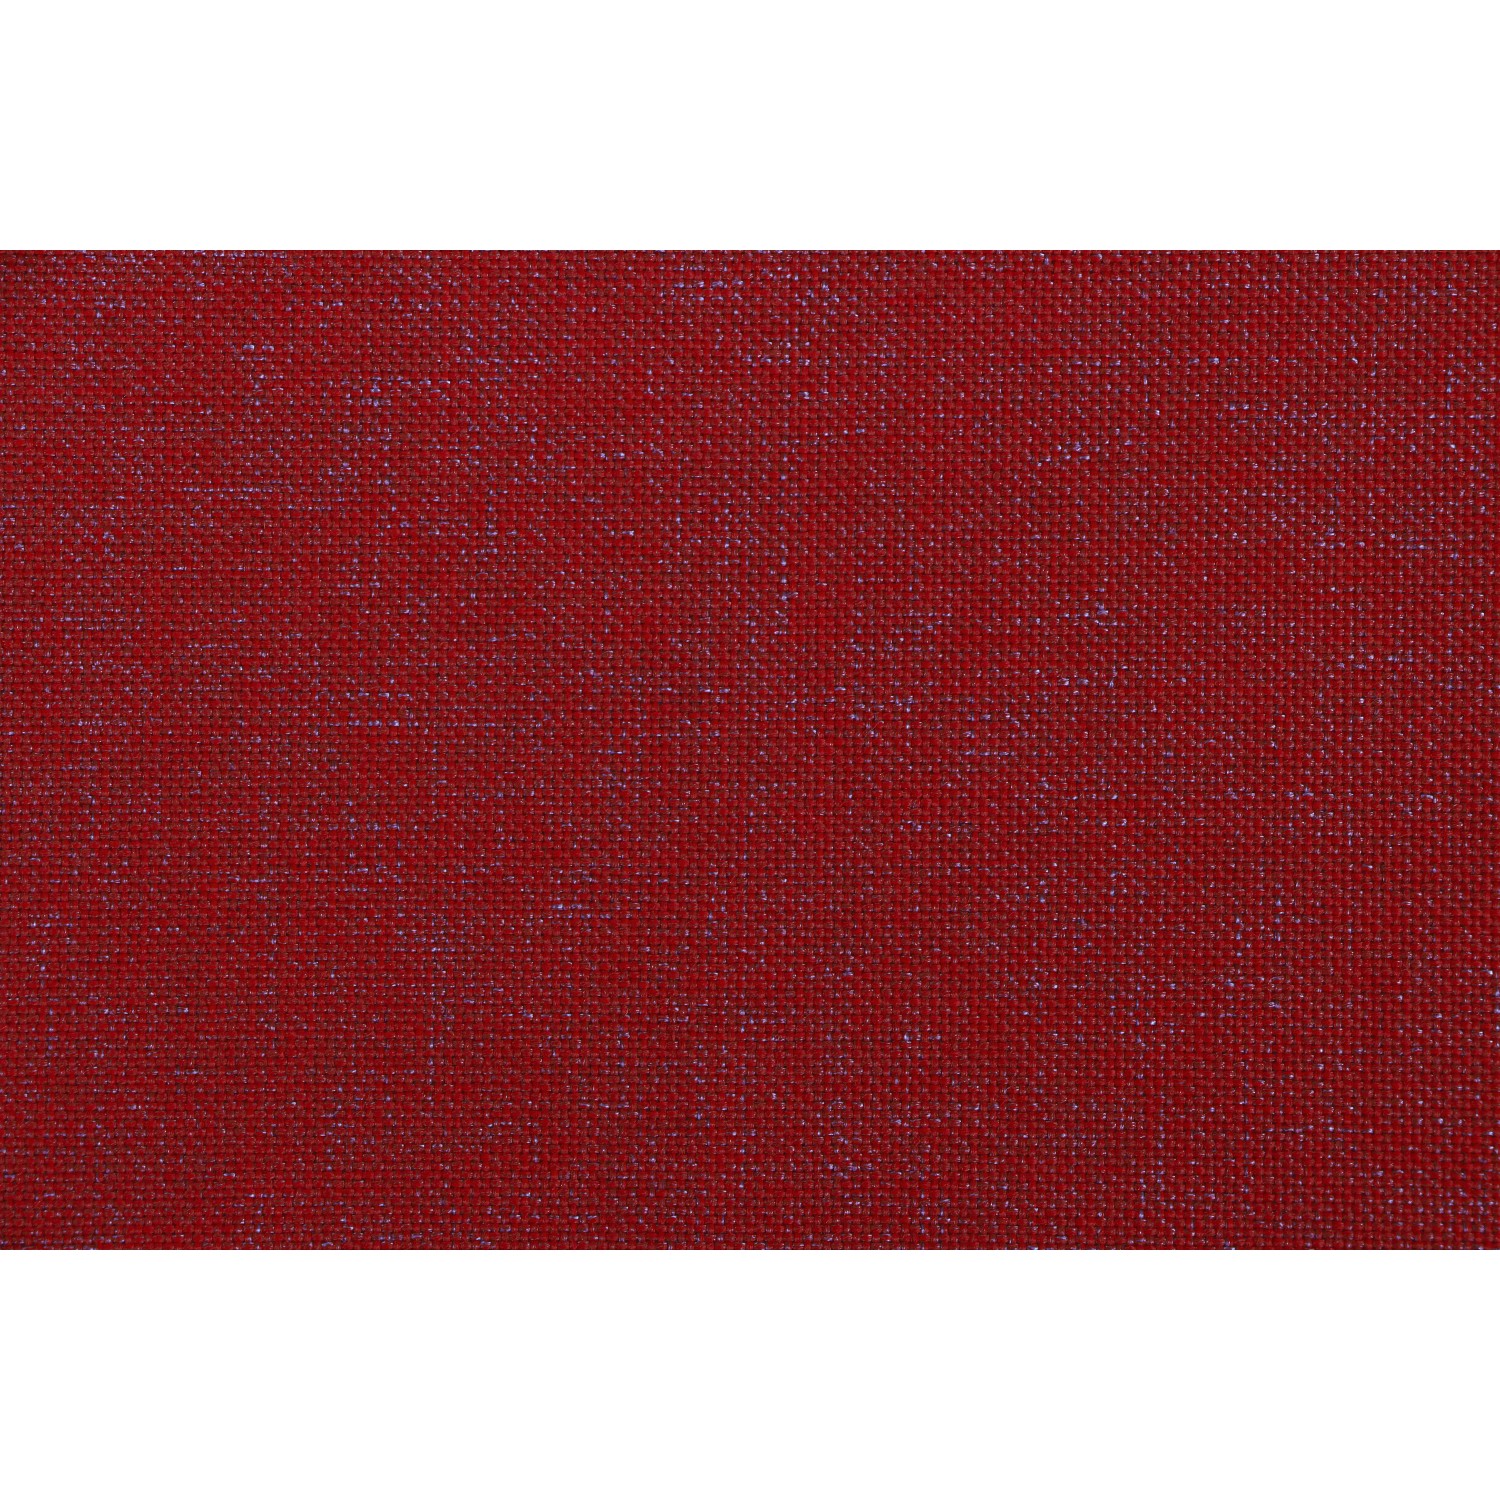 Musica 48 kaufen 3 Sesselauflage Rot x x cm 100 Siena Garden bei OBI cm cm